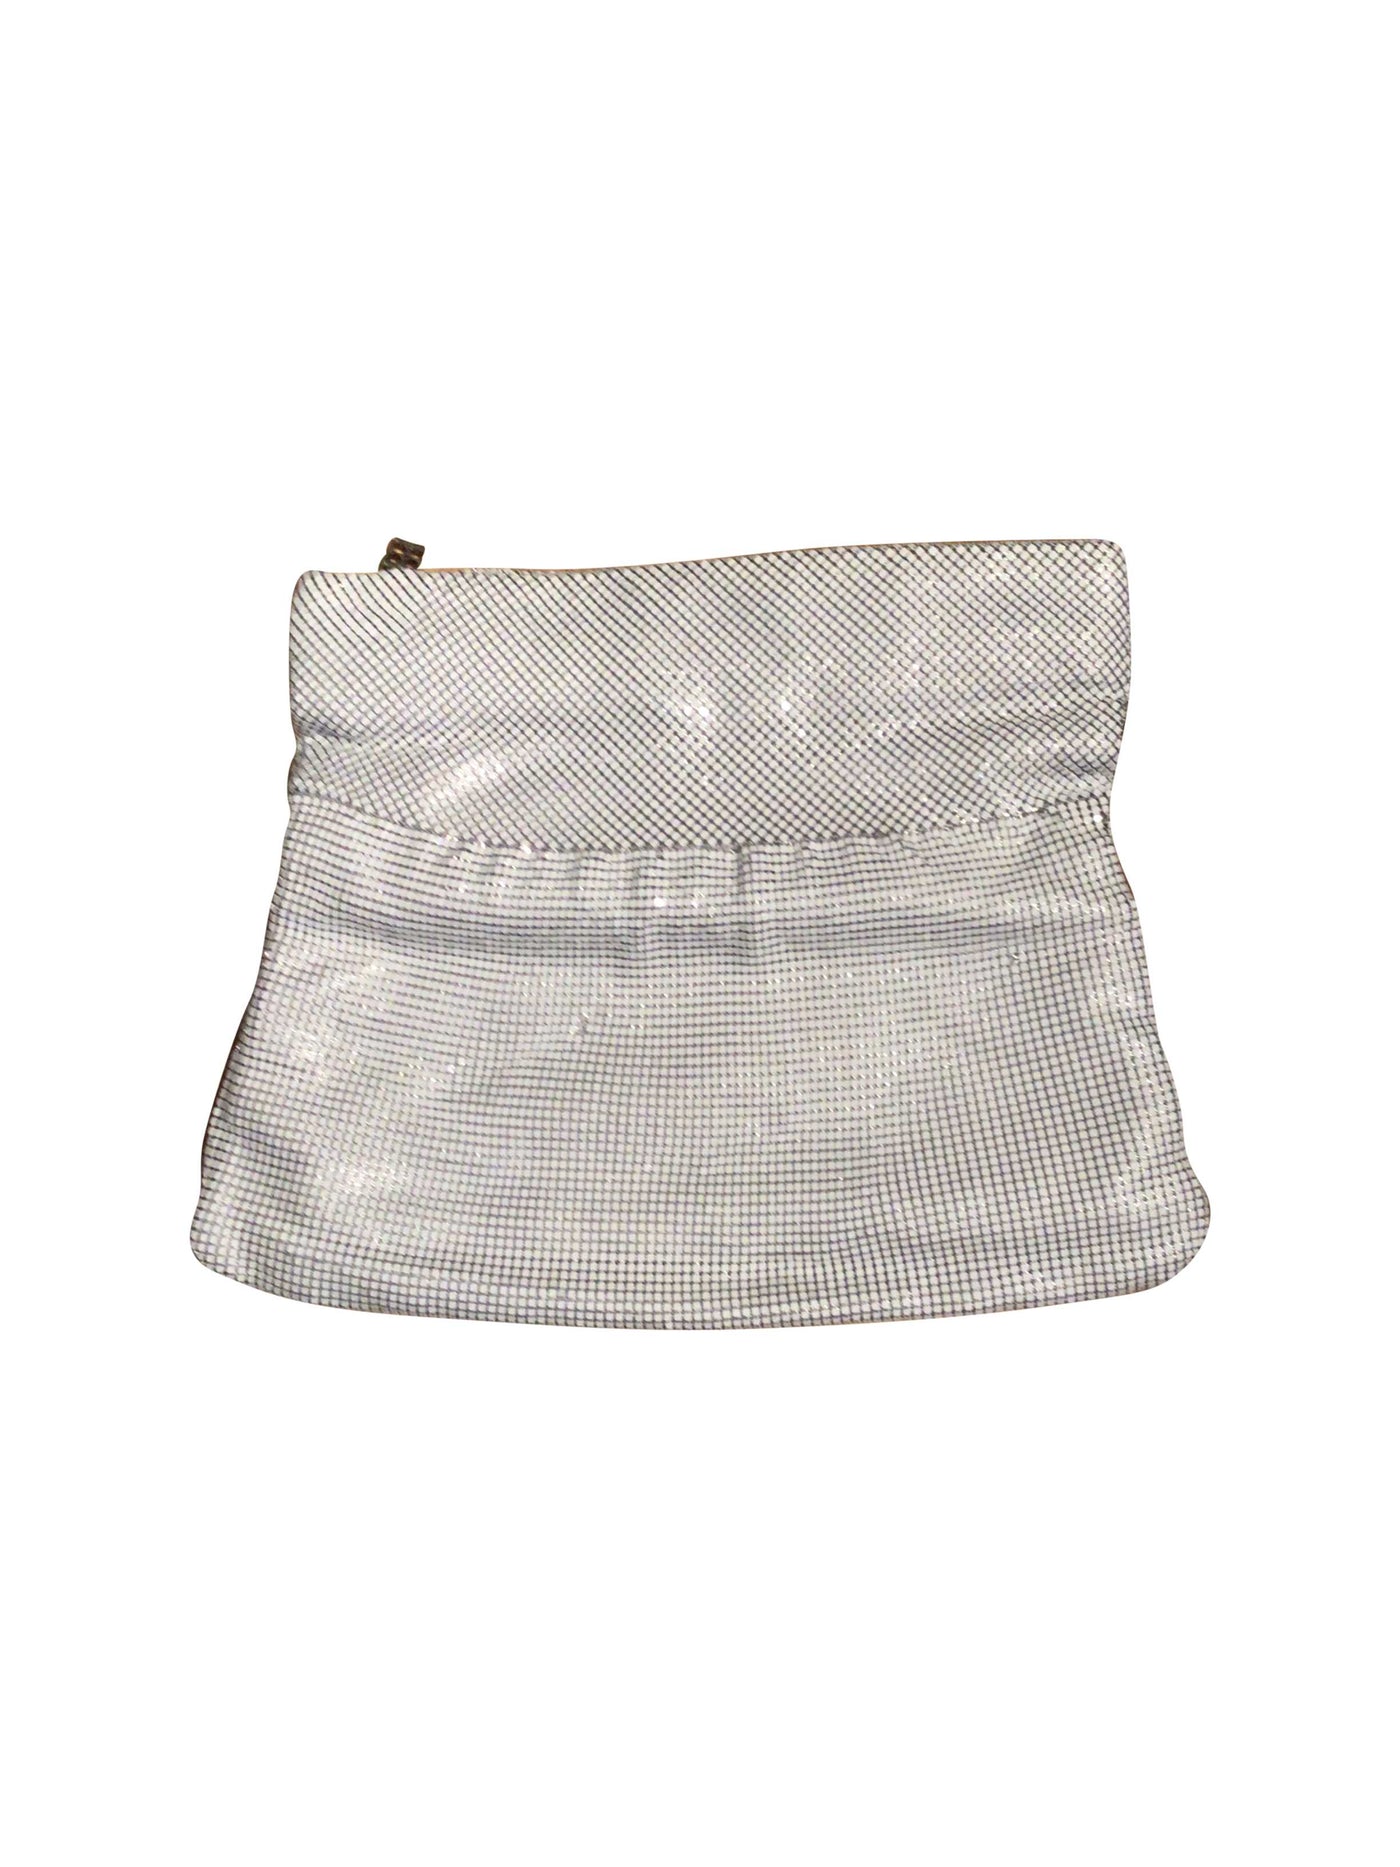 BCBG MAX AZRIA Bag in White  -  S  27.50 Koop